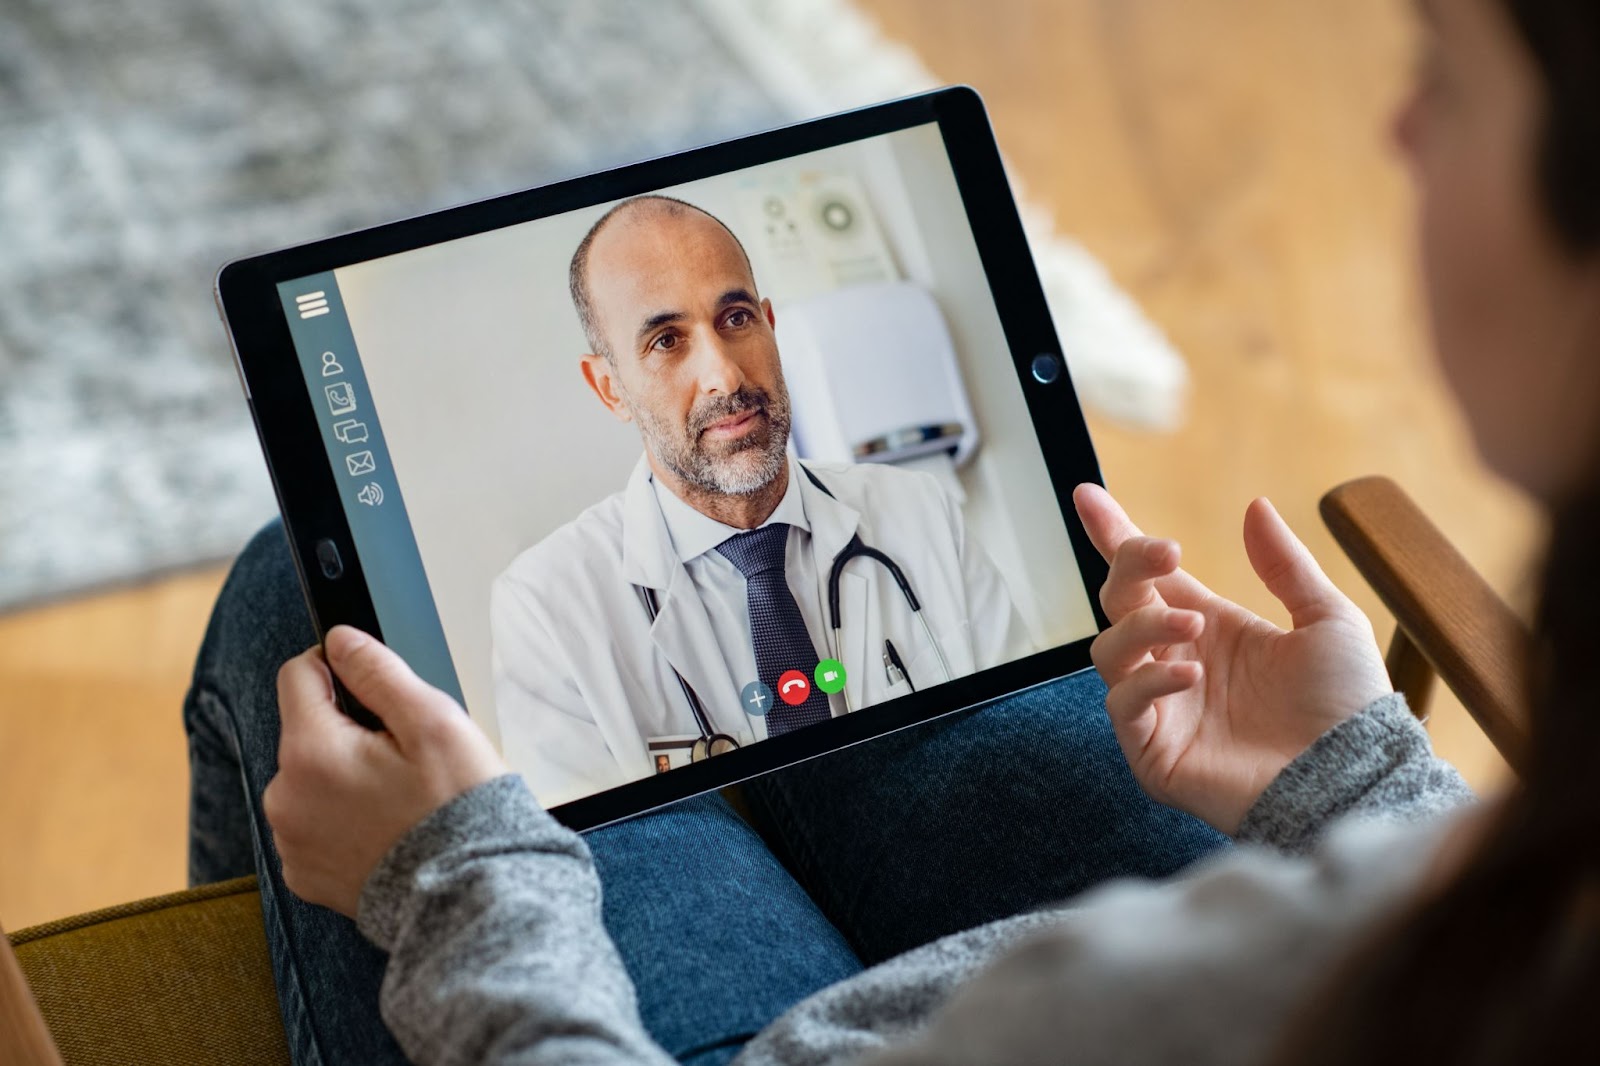 Acompanhamento médico é fundalmental para aprender como viver mais. Na imagem, consulta virtual por meio de um tablet.